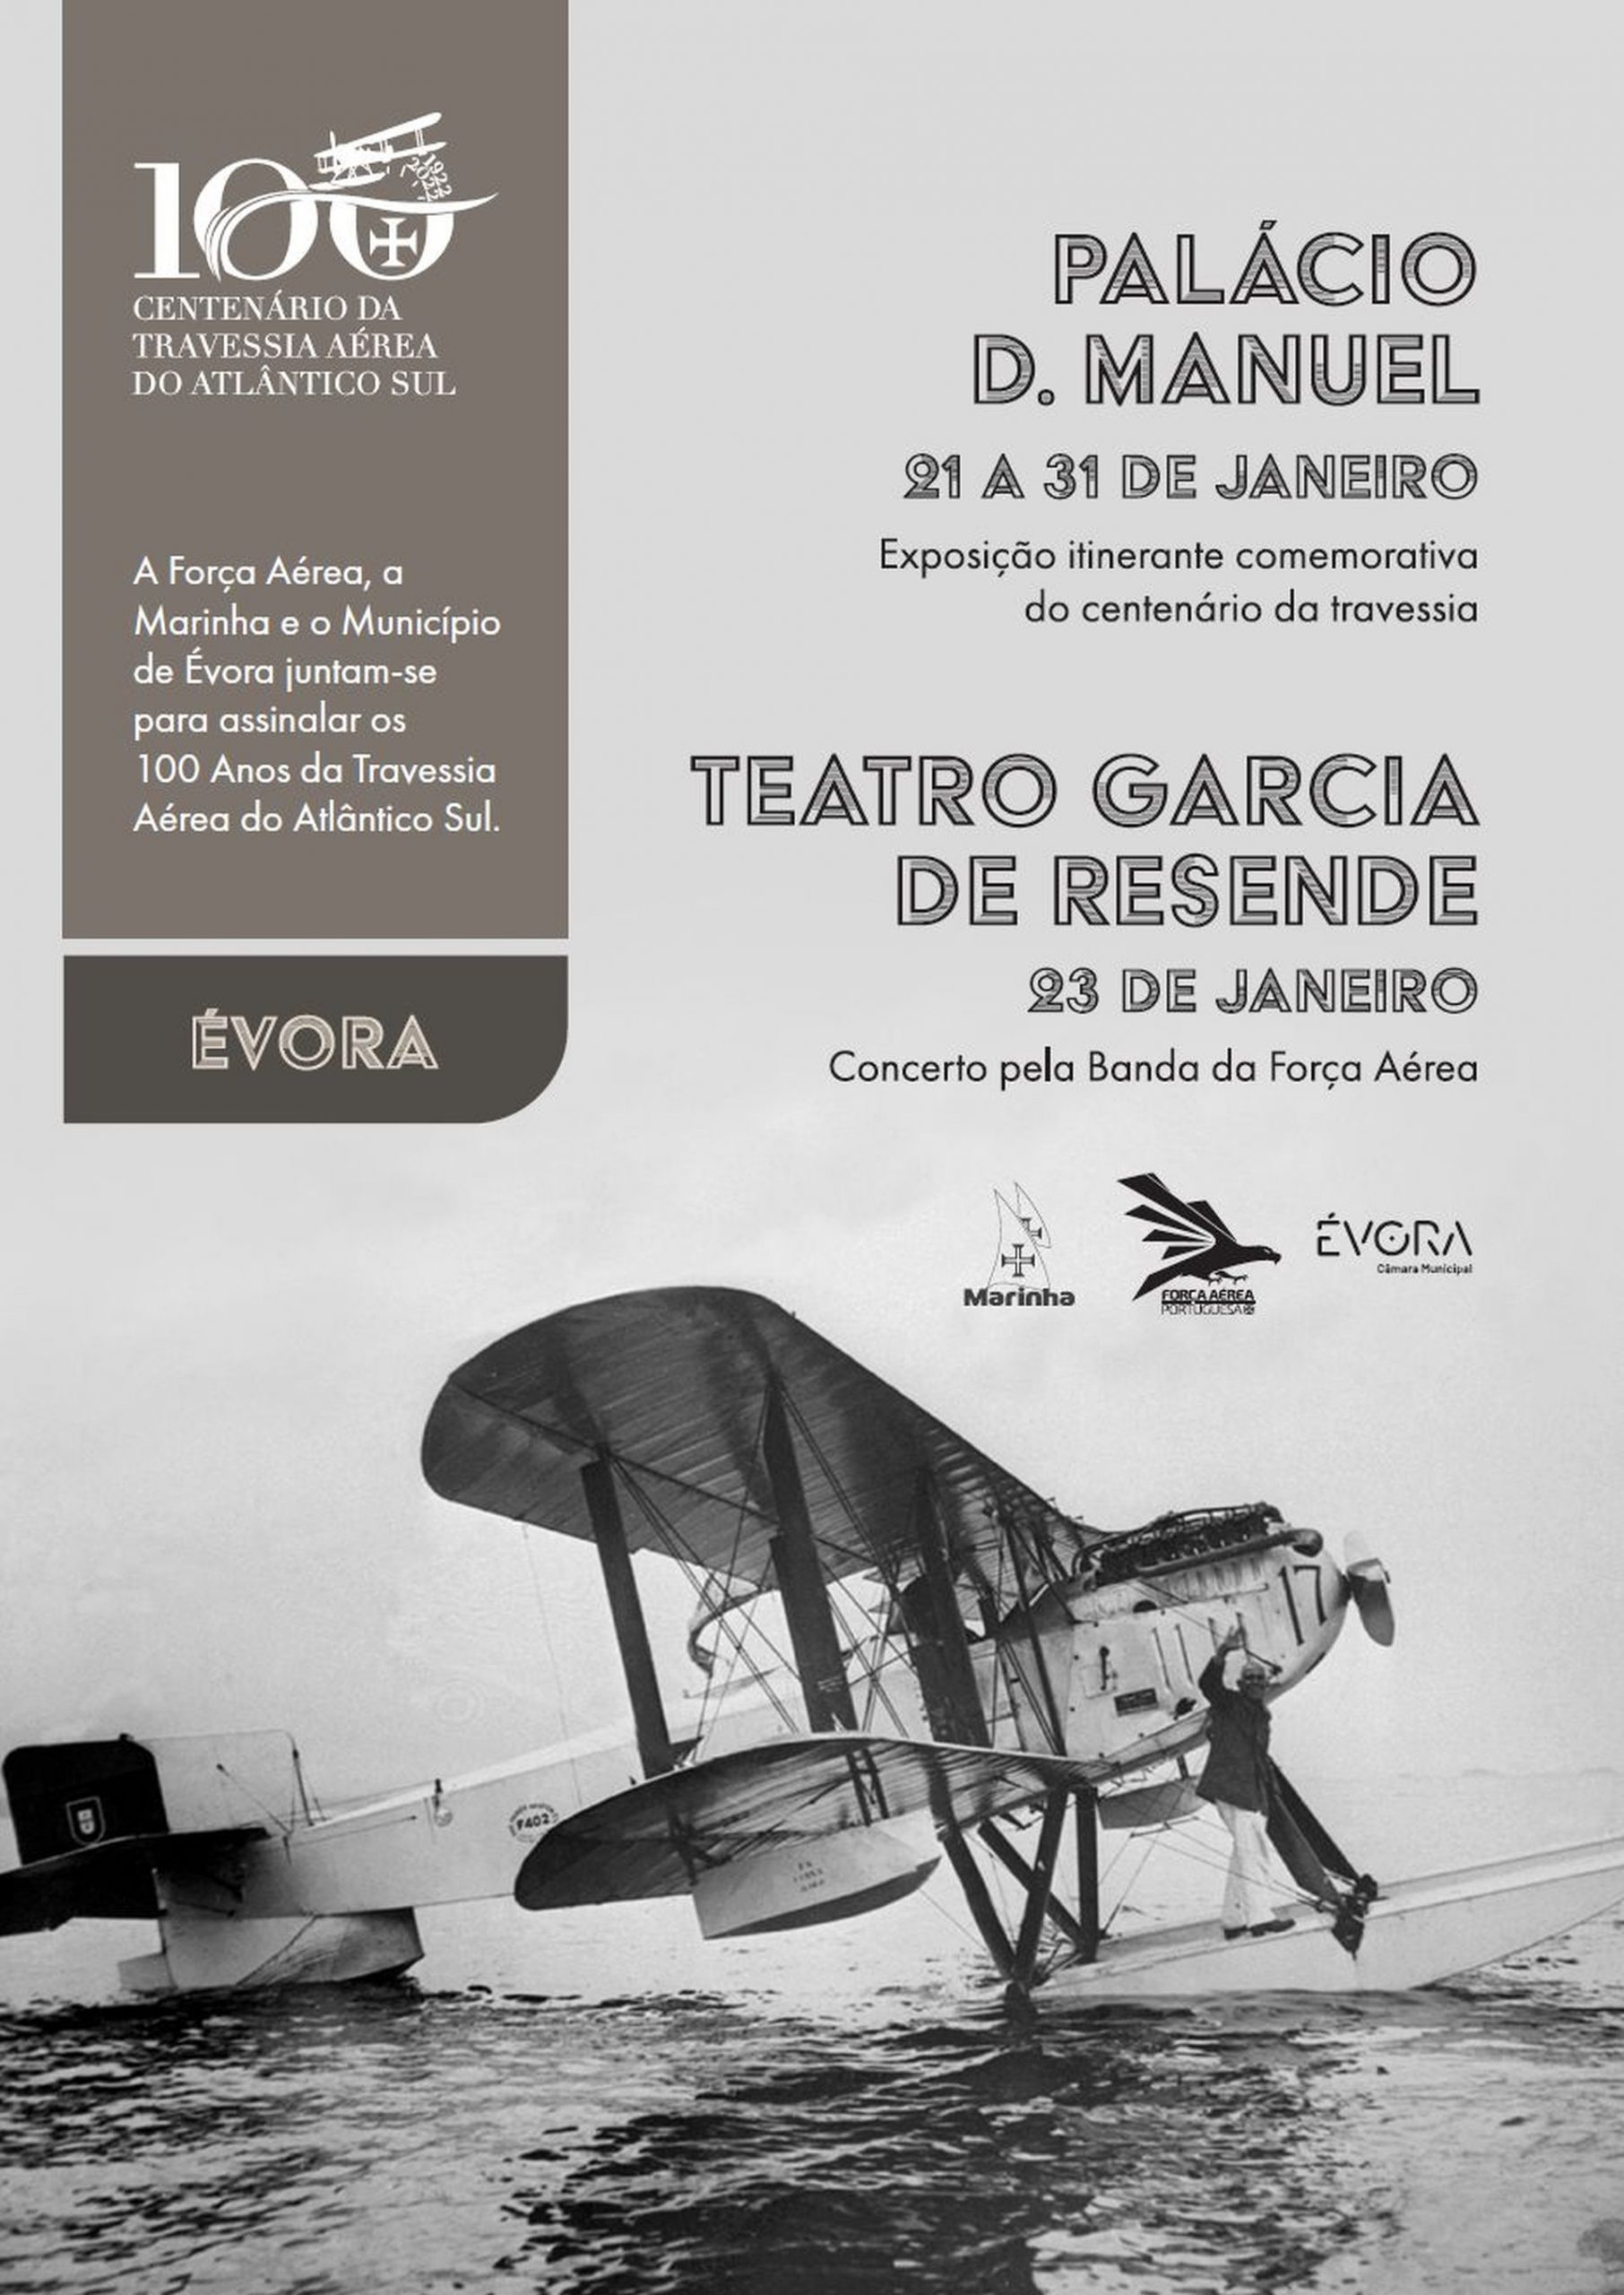 Exposição e concerto em Évora assinalam comemorações do Centenário da Travessia Aérea do Atlântico Sul